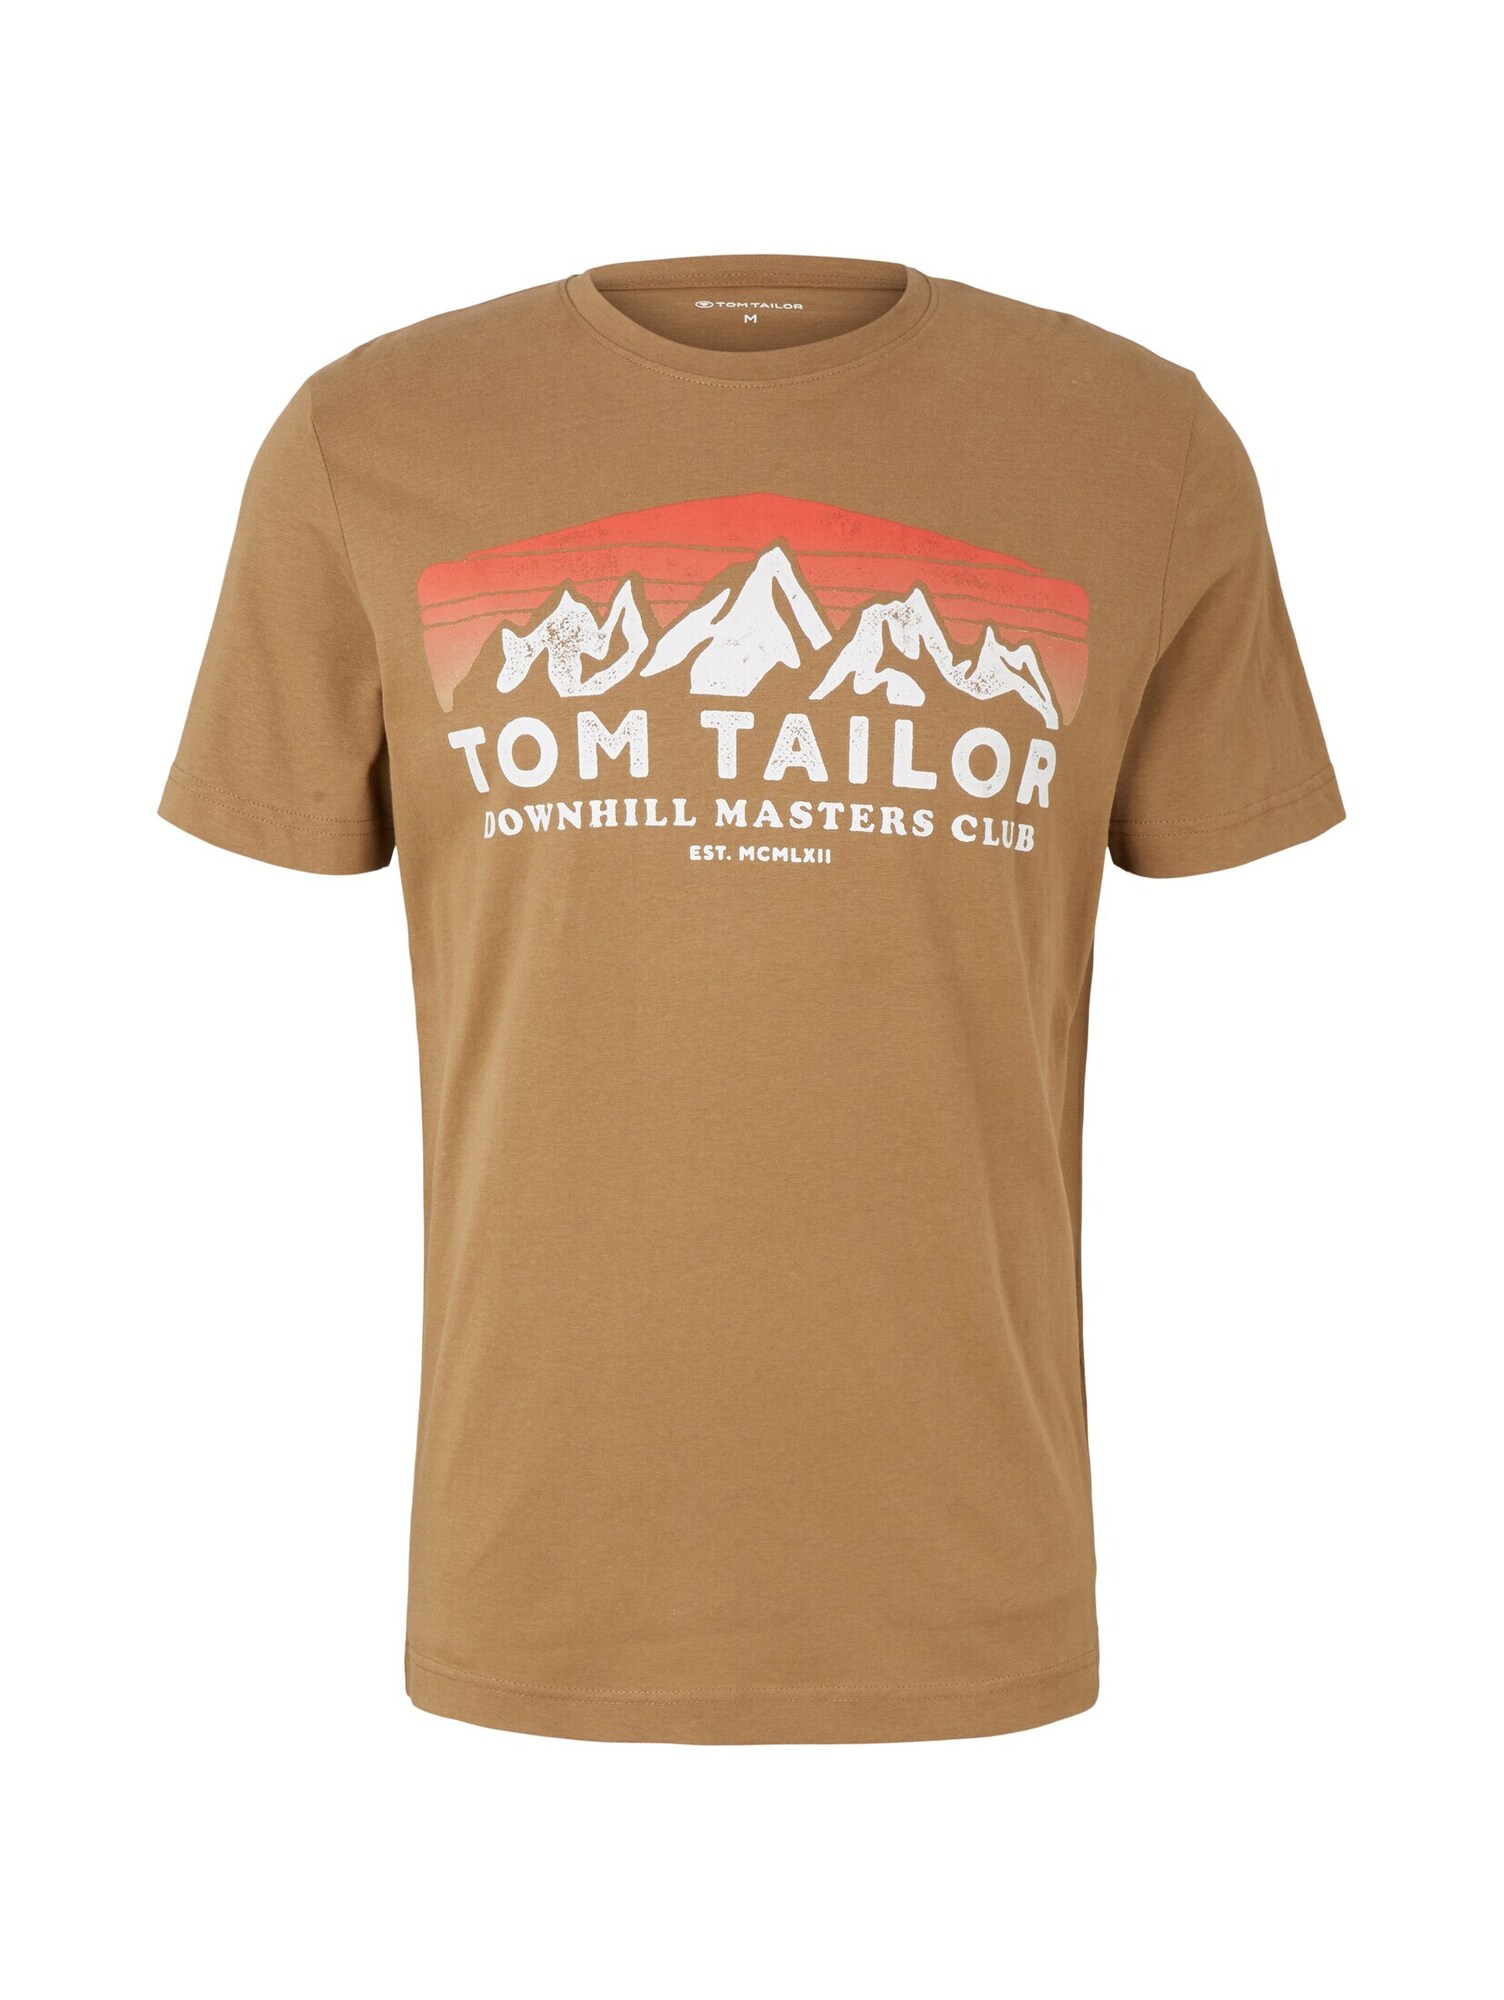 TOM TAILOR Shirt braun / wei / orange